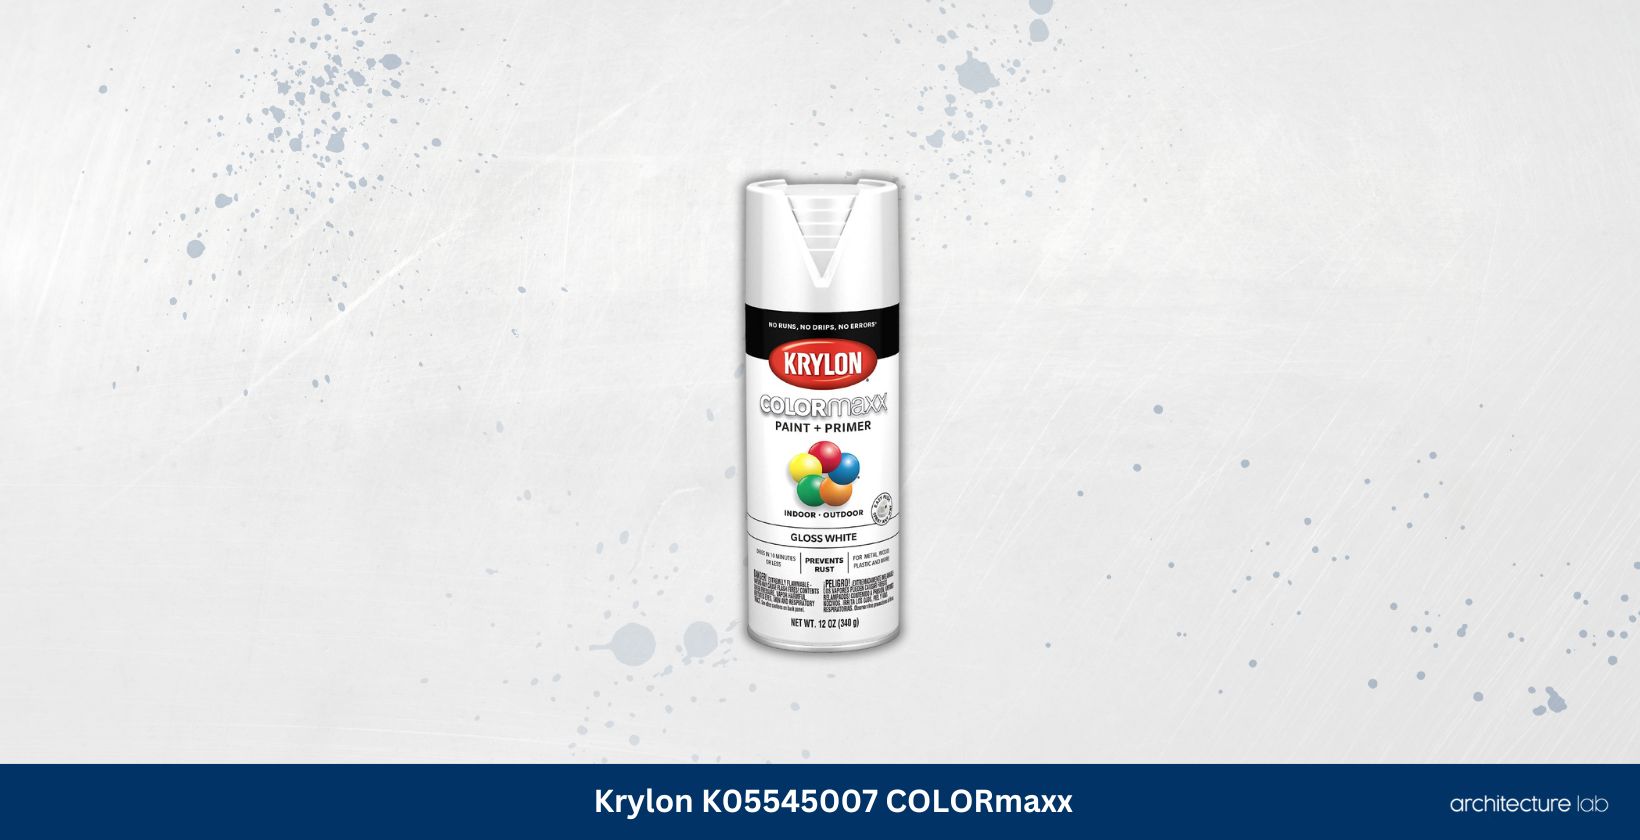 Krylon k05545007 colormaxx